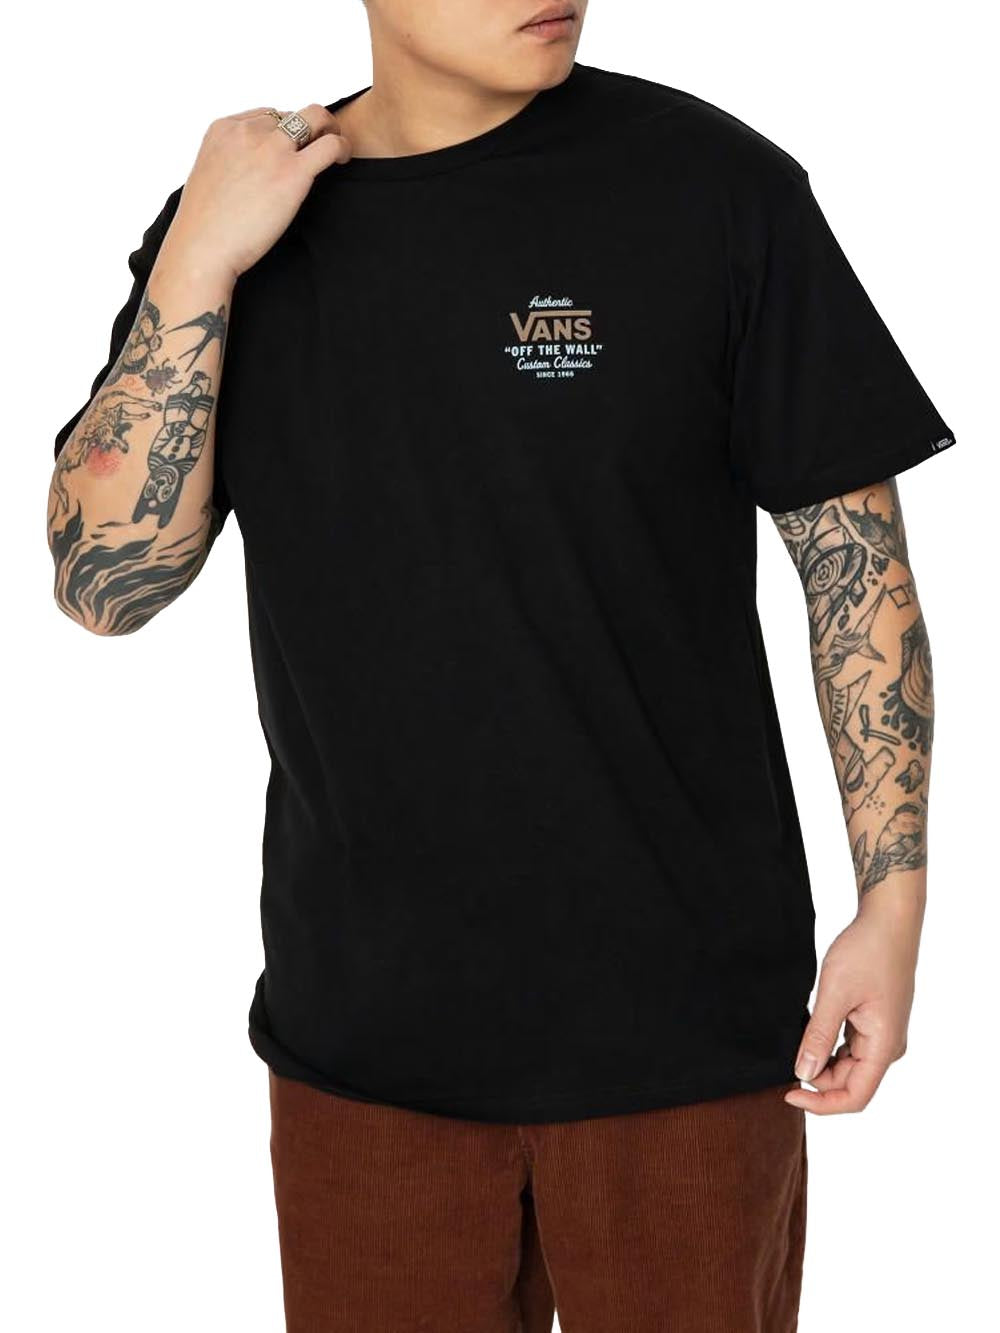 Vans T-shirt Uomo Nero